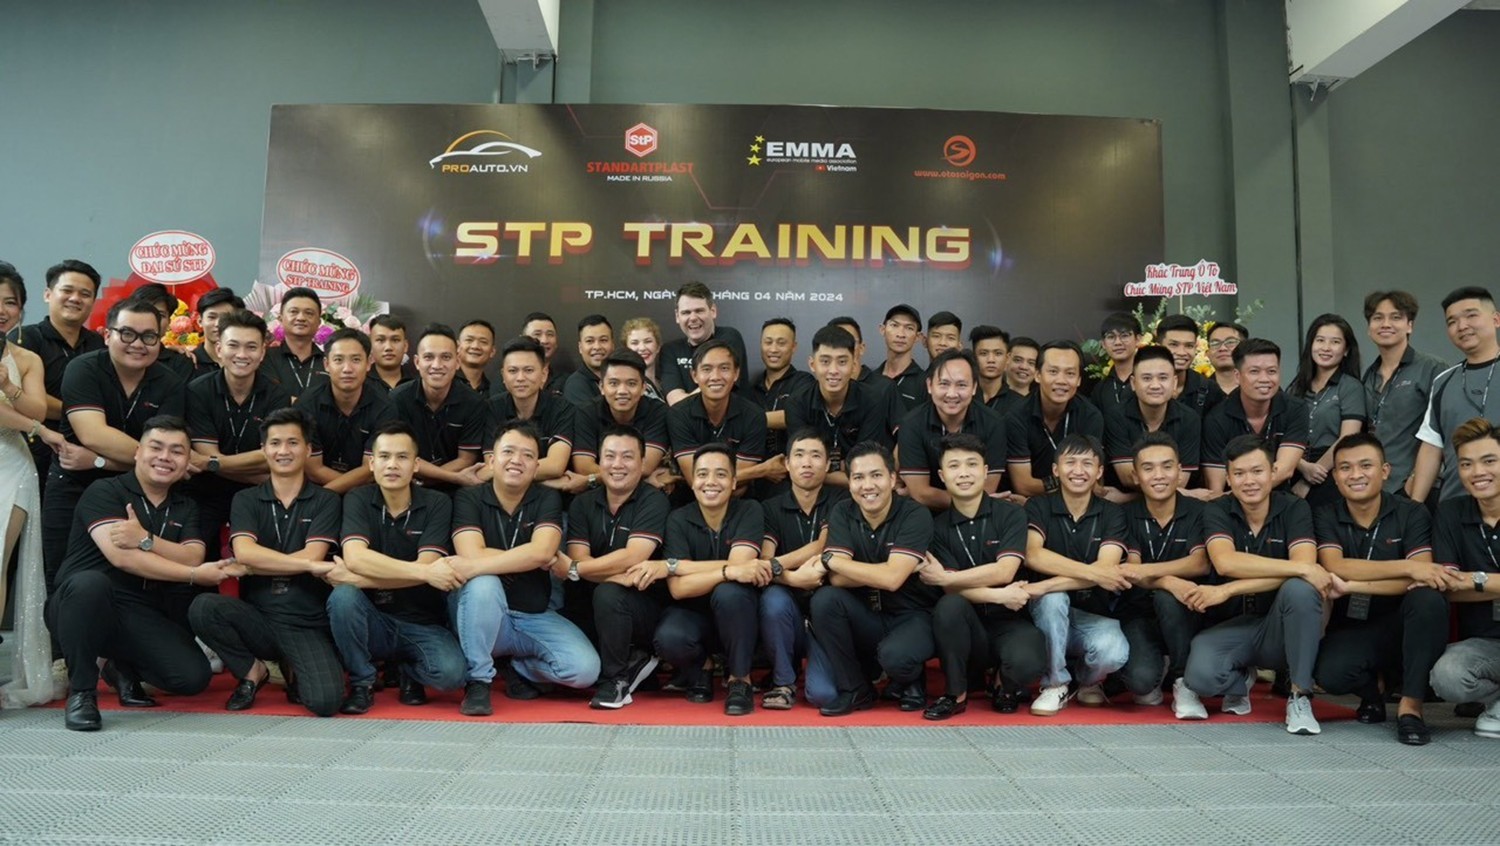 Buổi training StP có sự tham dự của các đại sứ thương hiệu trên toàn quốc